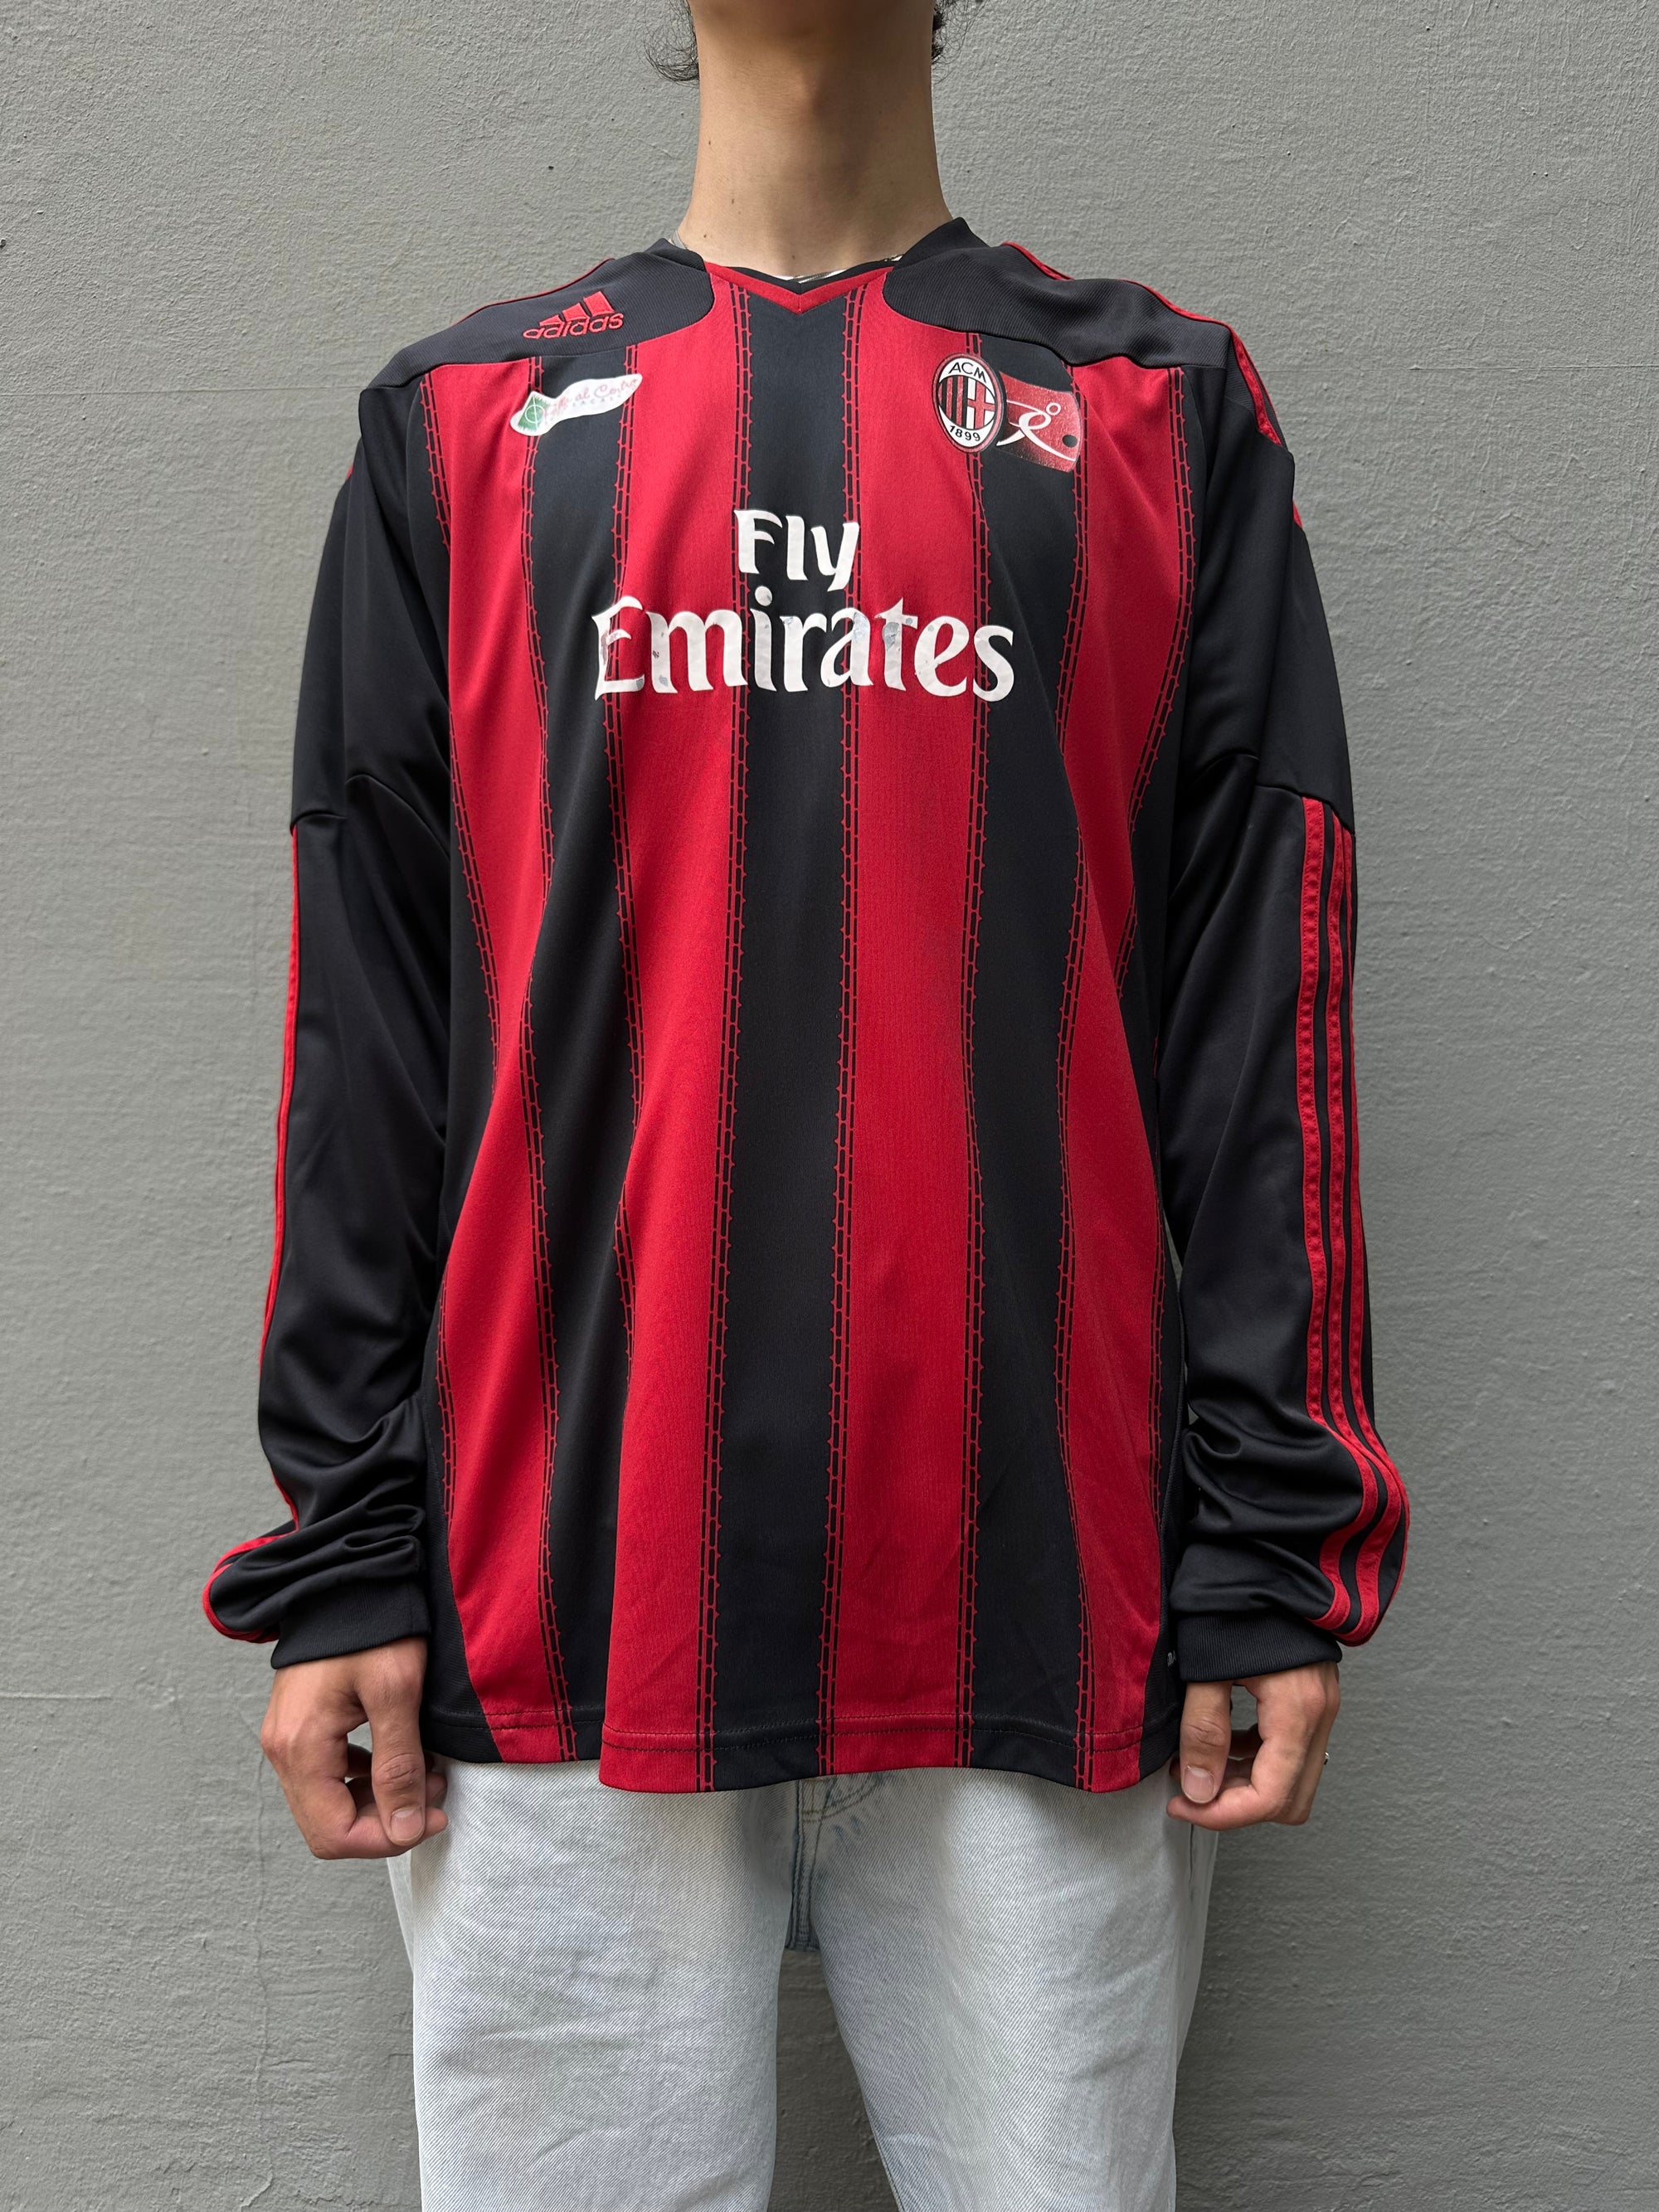 Vintage Adidas AC Milan Longsleeve Jersey L/XL